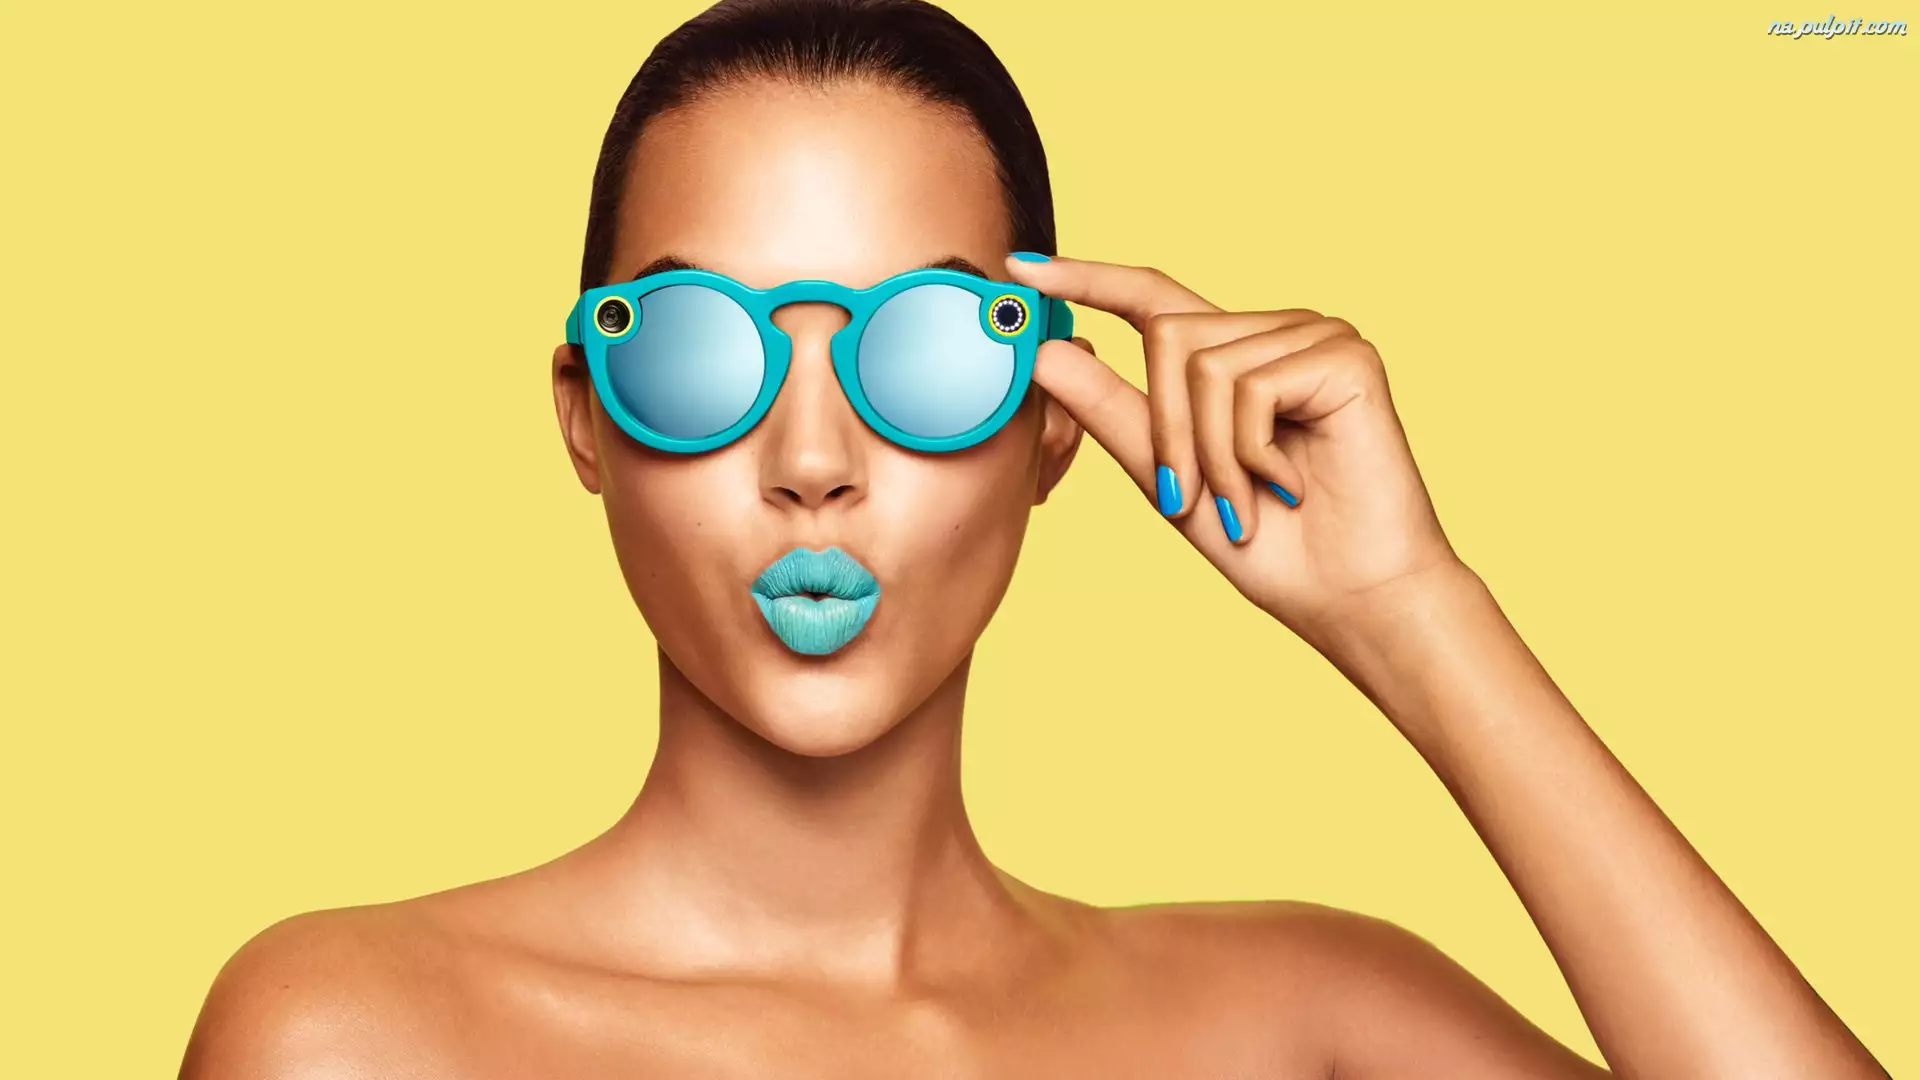 Makijaż, Dziewczyna, Okulary Snapchat Spectacles